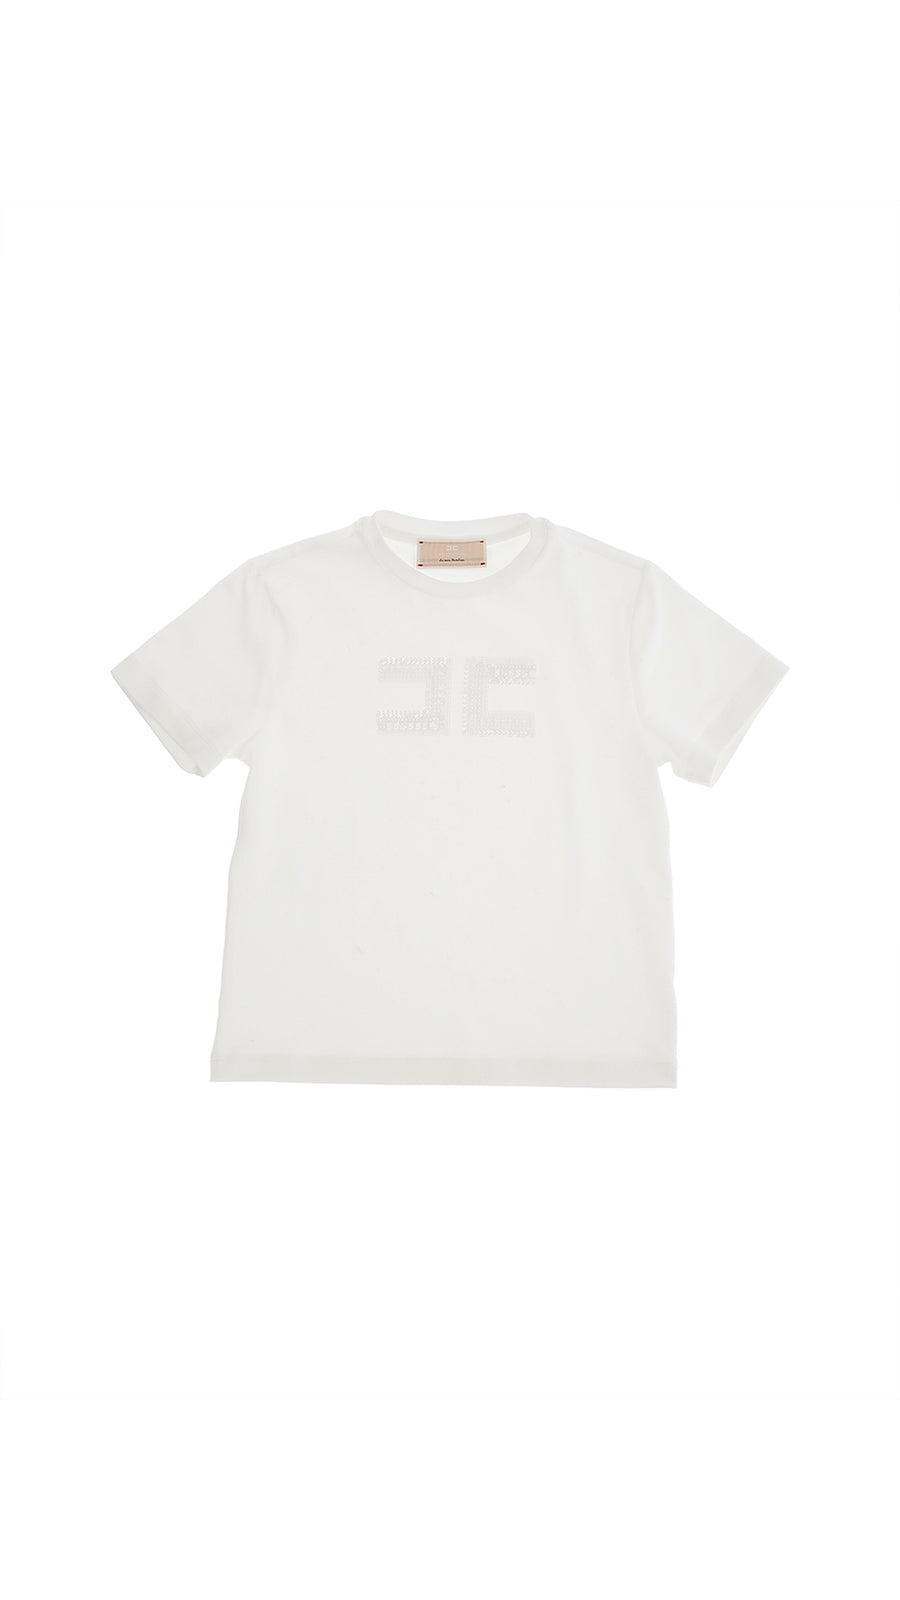 T-shirt bianca ricamo logo